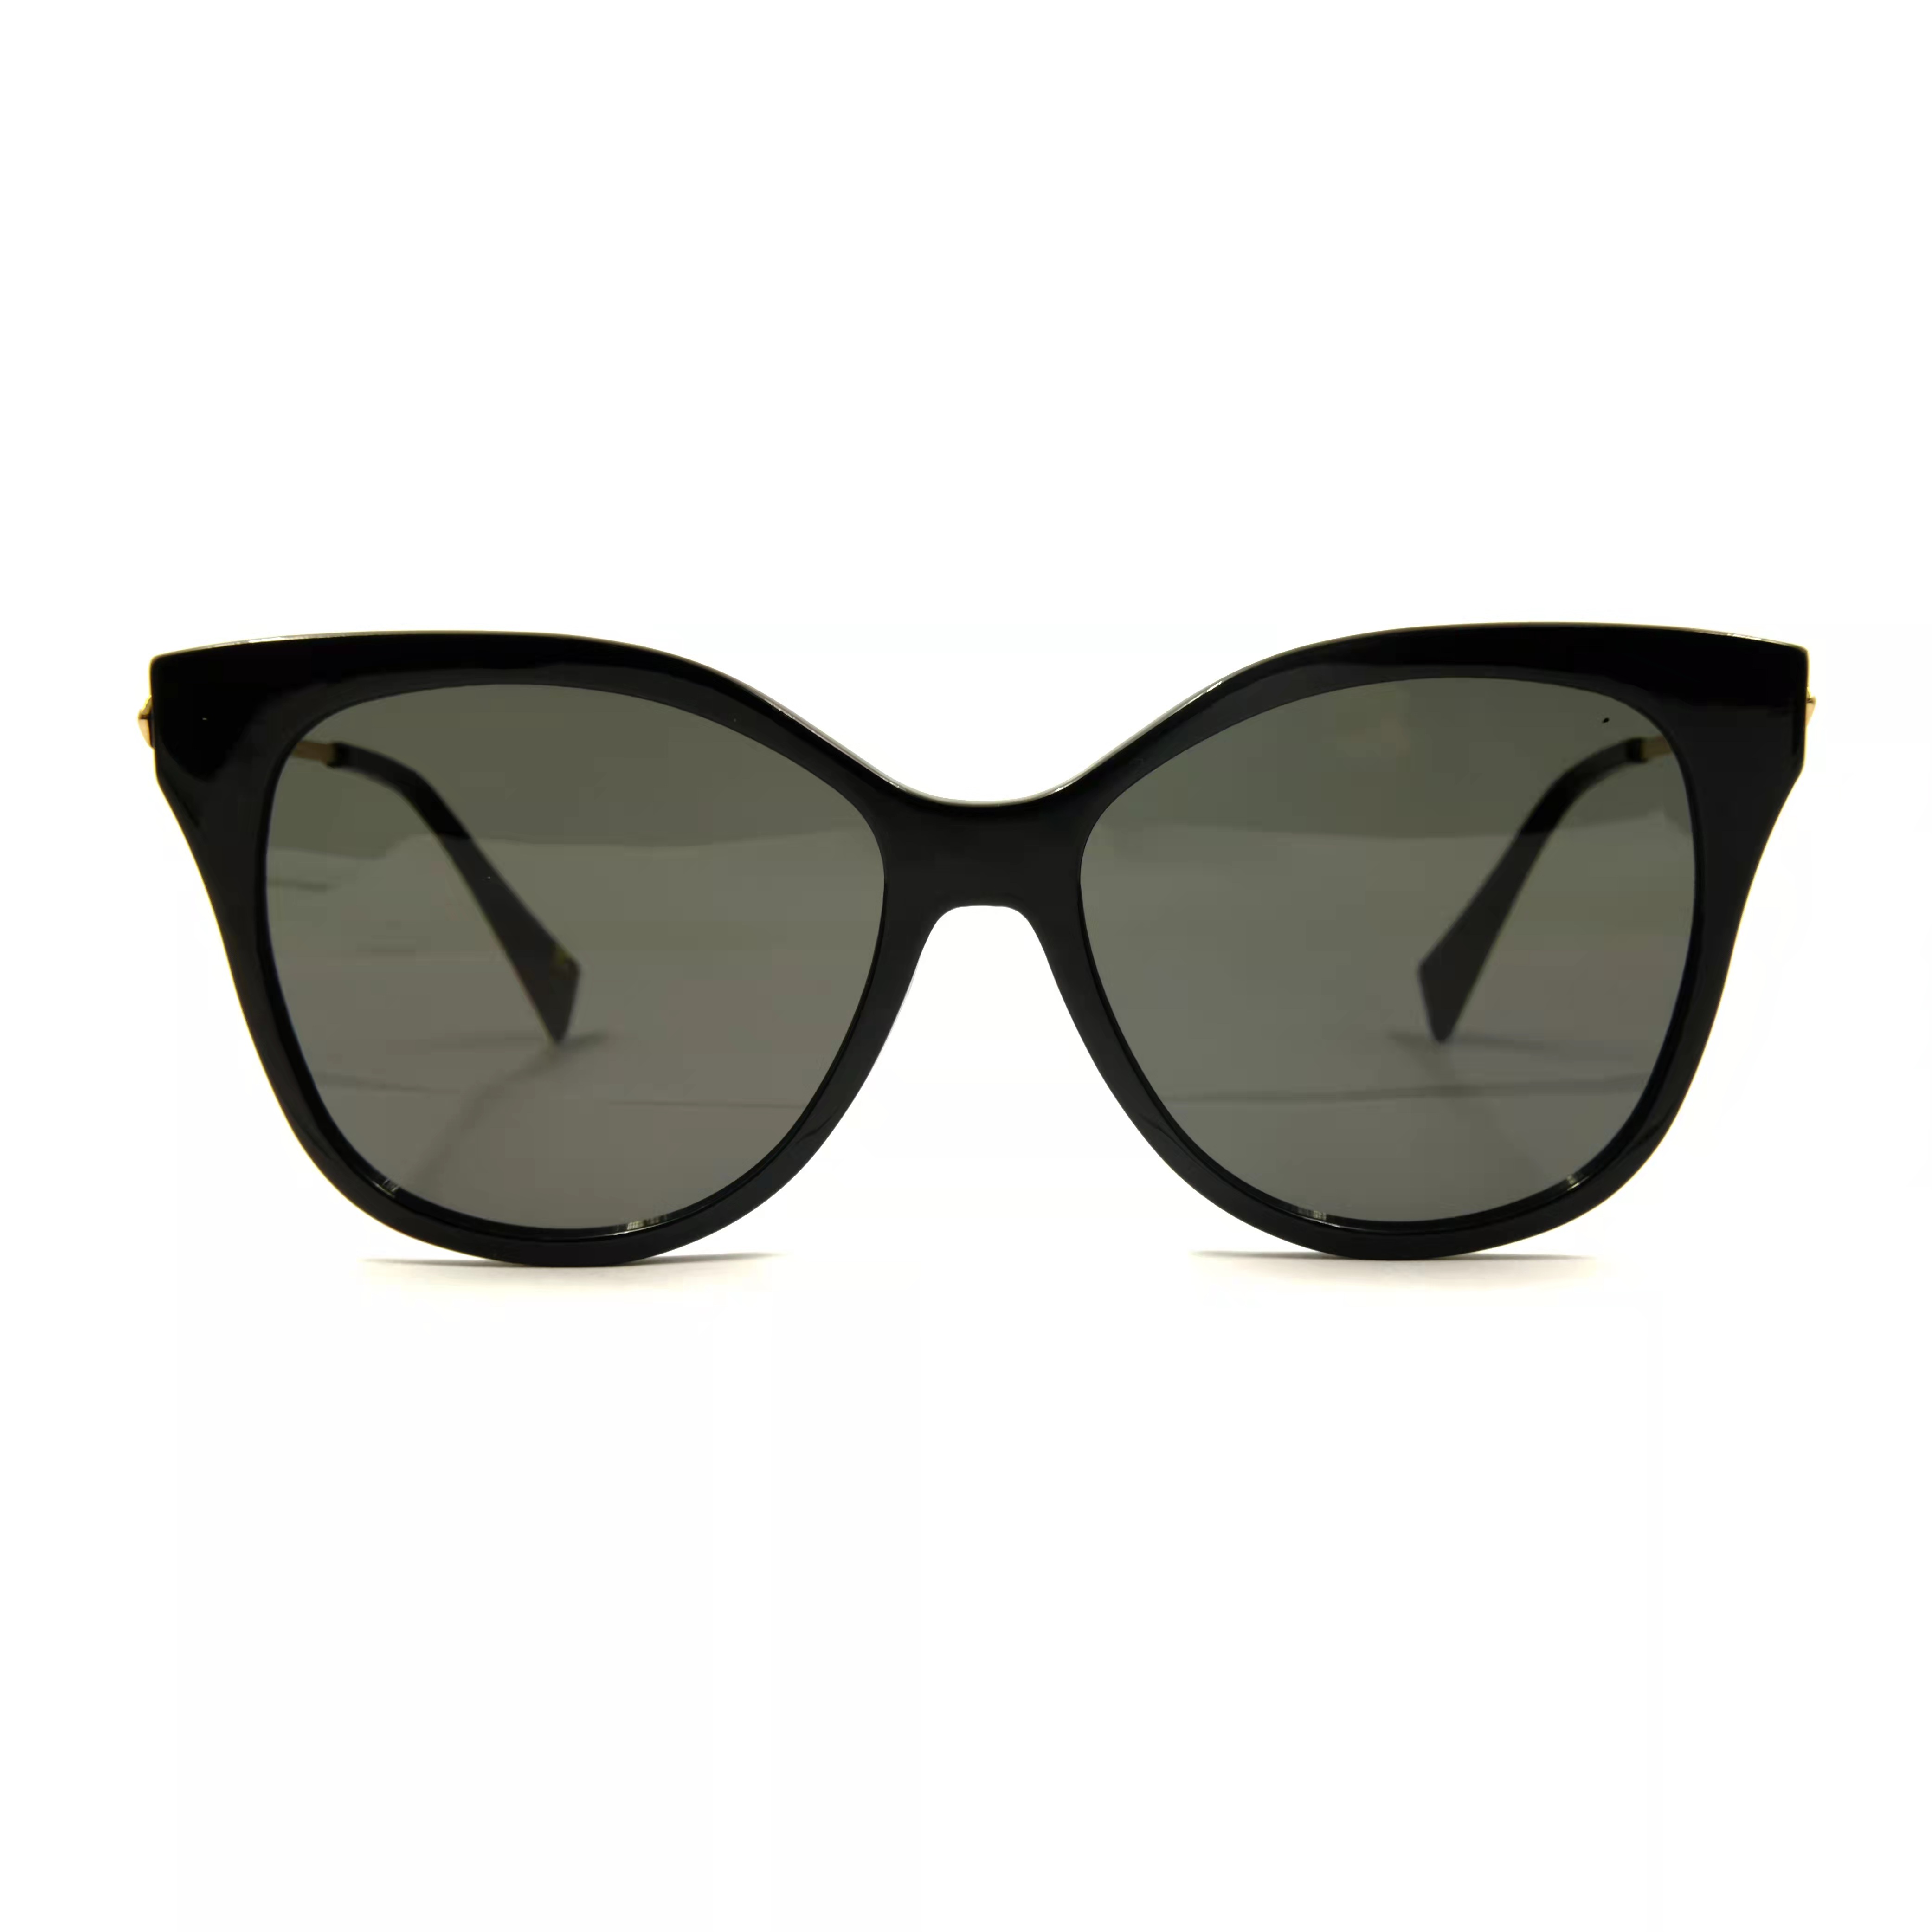 Montura de acetato, gafas de sol personalizadas para mujer, gafas de sol, fabricación de gafas personalizadas